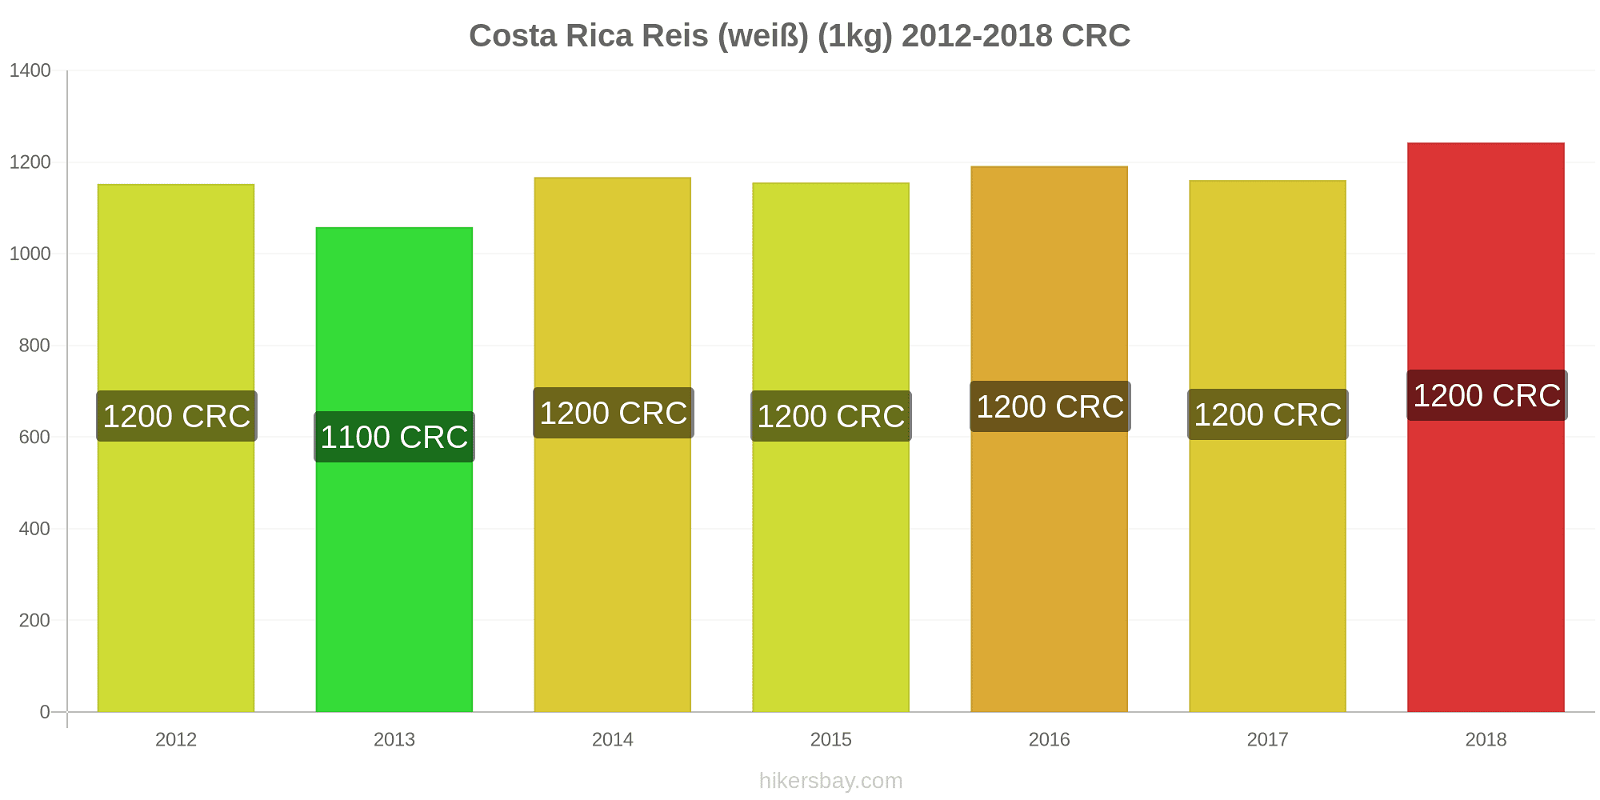 Costa Rica Preisänderungen Reis (weiß) (1kg) hikersbay.com